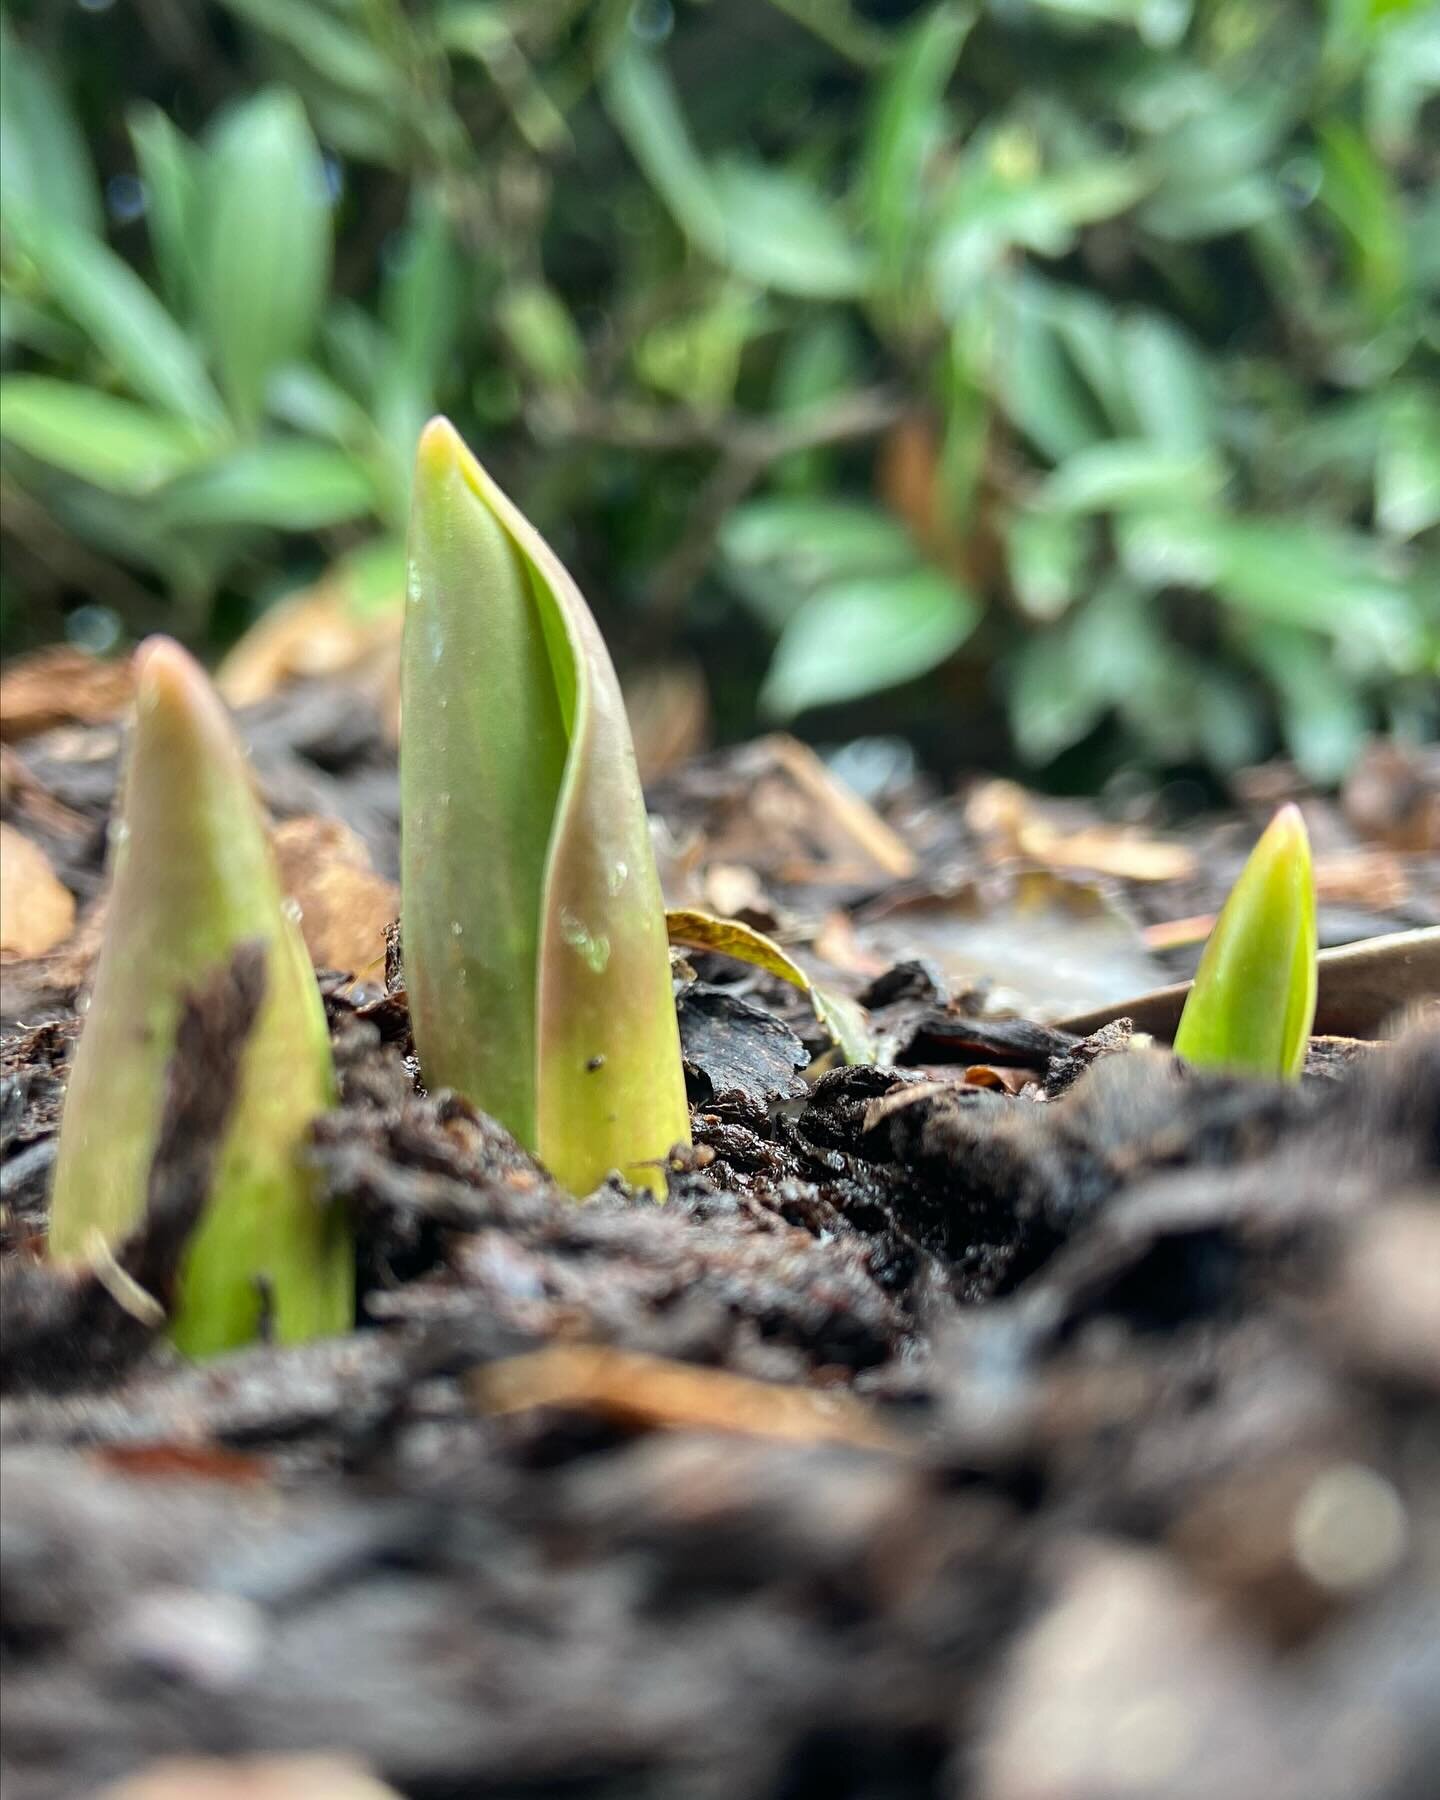 Der Fr&uuml;hling bricht durch 💚🌷🌷
.
.
Fr&uuml;hlingsgef&uuml;hle kommen auf und die Vorfreude auf farbige Bl&uuml;htenpracht hat uns ergriffen 🙌🏻🤩
.
.
Hast du Zwiebelpflanzen im Garten? 
#tulpen #narzissen #hyazinthen #lauch #blaustern #lilien